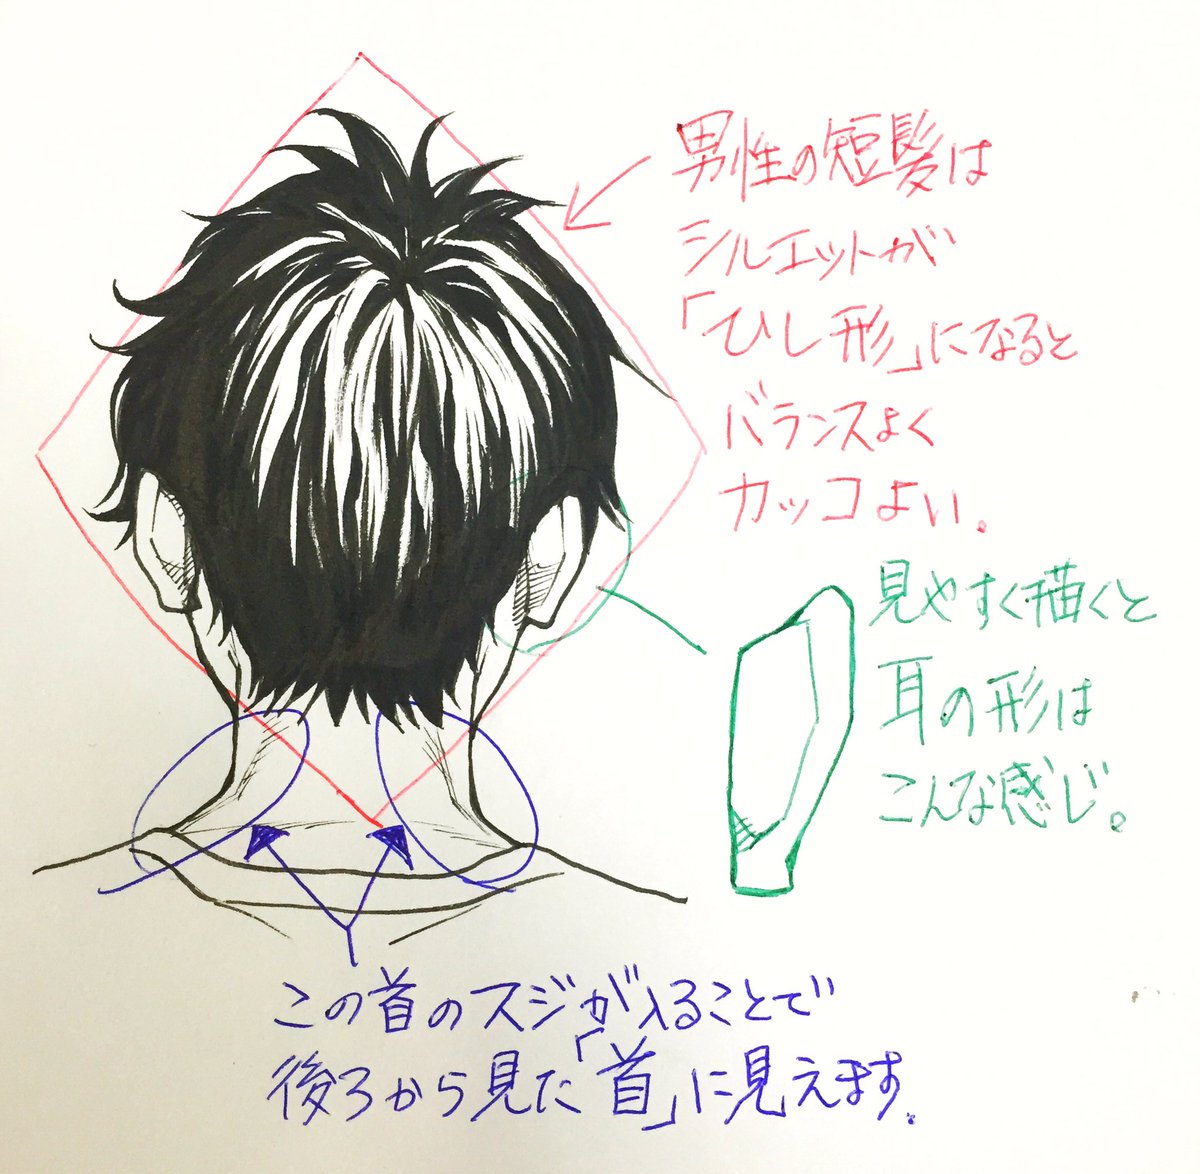 吉村拓也 イラスト講座 後頭部 首の 描き方 画像プチ解説 ポイントはこの3つ